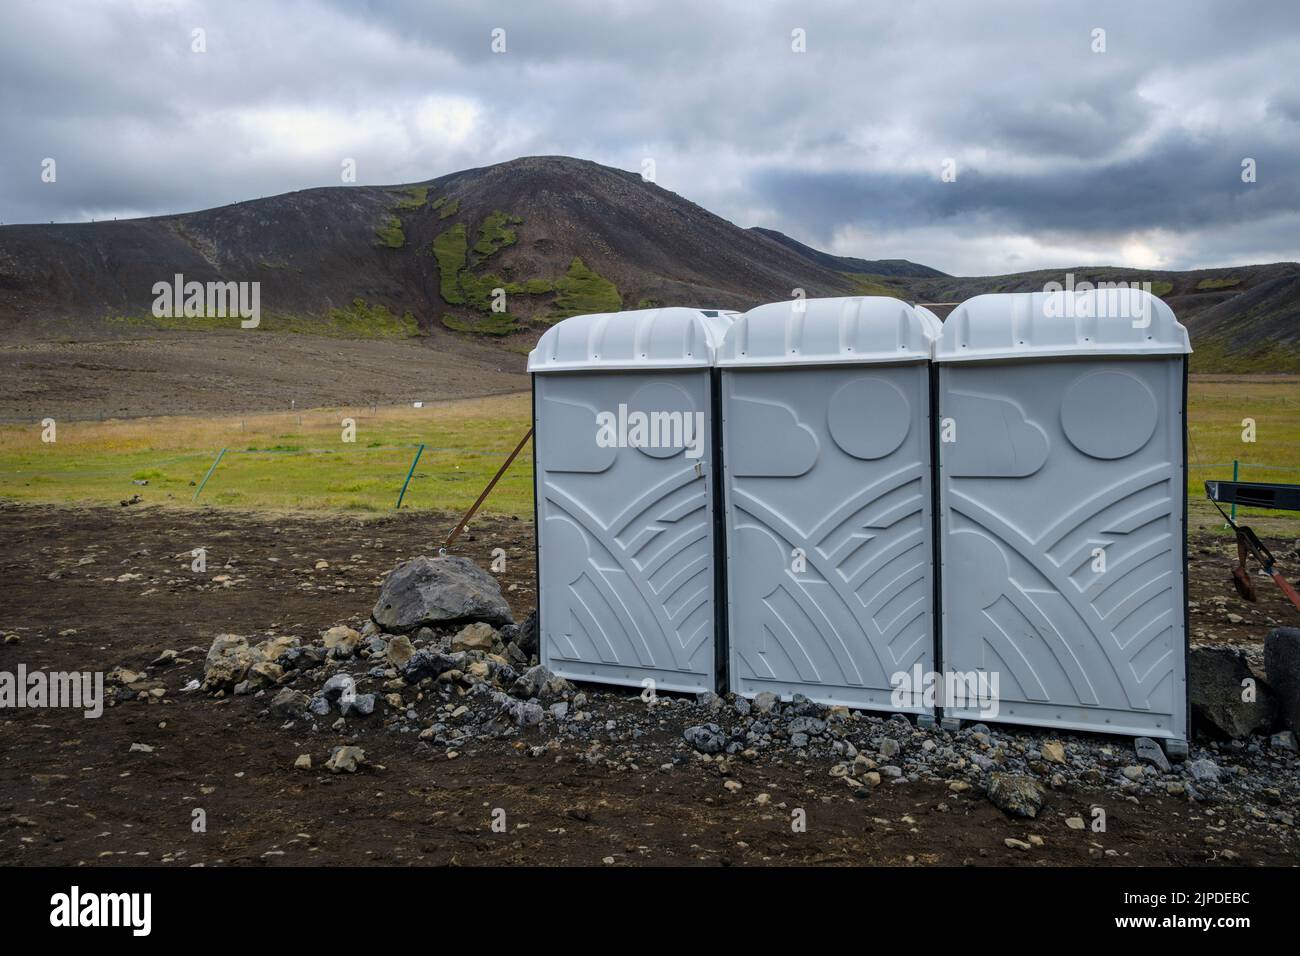 Toilettes portatives installées pour les personnes qui ont fait de la randonnée jusqu'à l'éruption du volcan Meradalir, péninsule de Reykjanes, Islande, août 2022 Banque D'Images